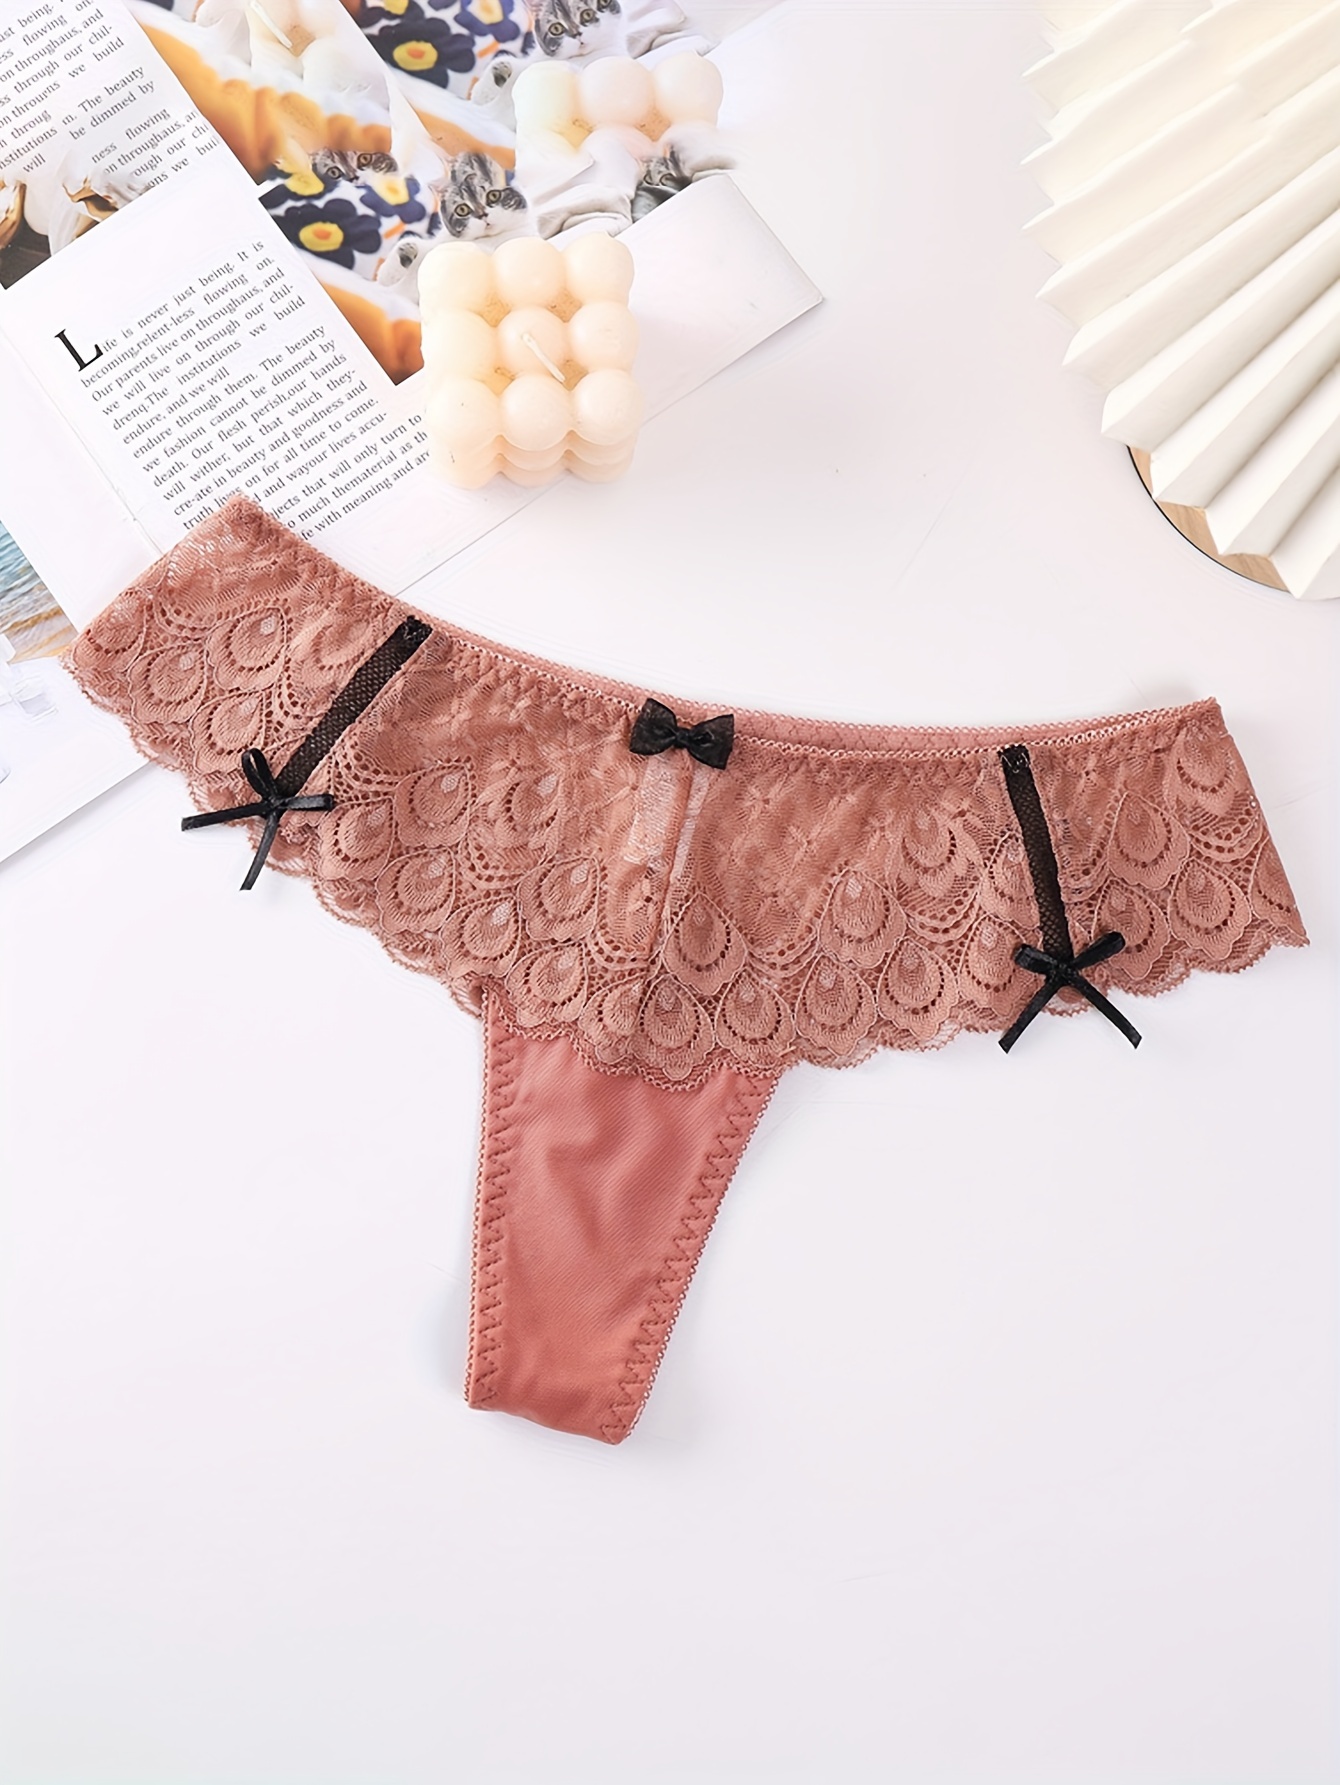 4pcs Contrast Lace Thongs, Soft & Comfy Scallop Trim Bow Tie Panties,  Women's Lingerie & Underwear